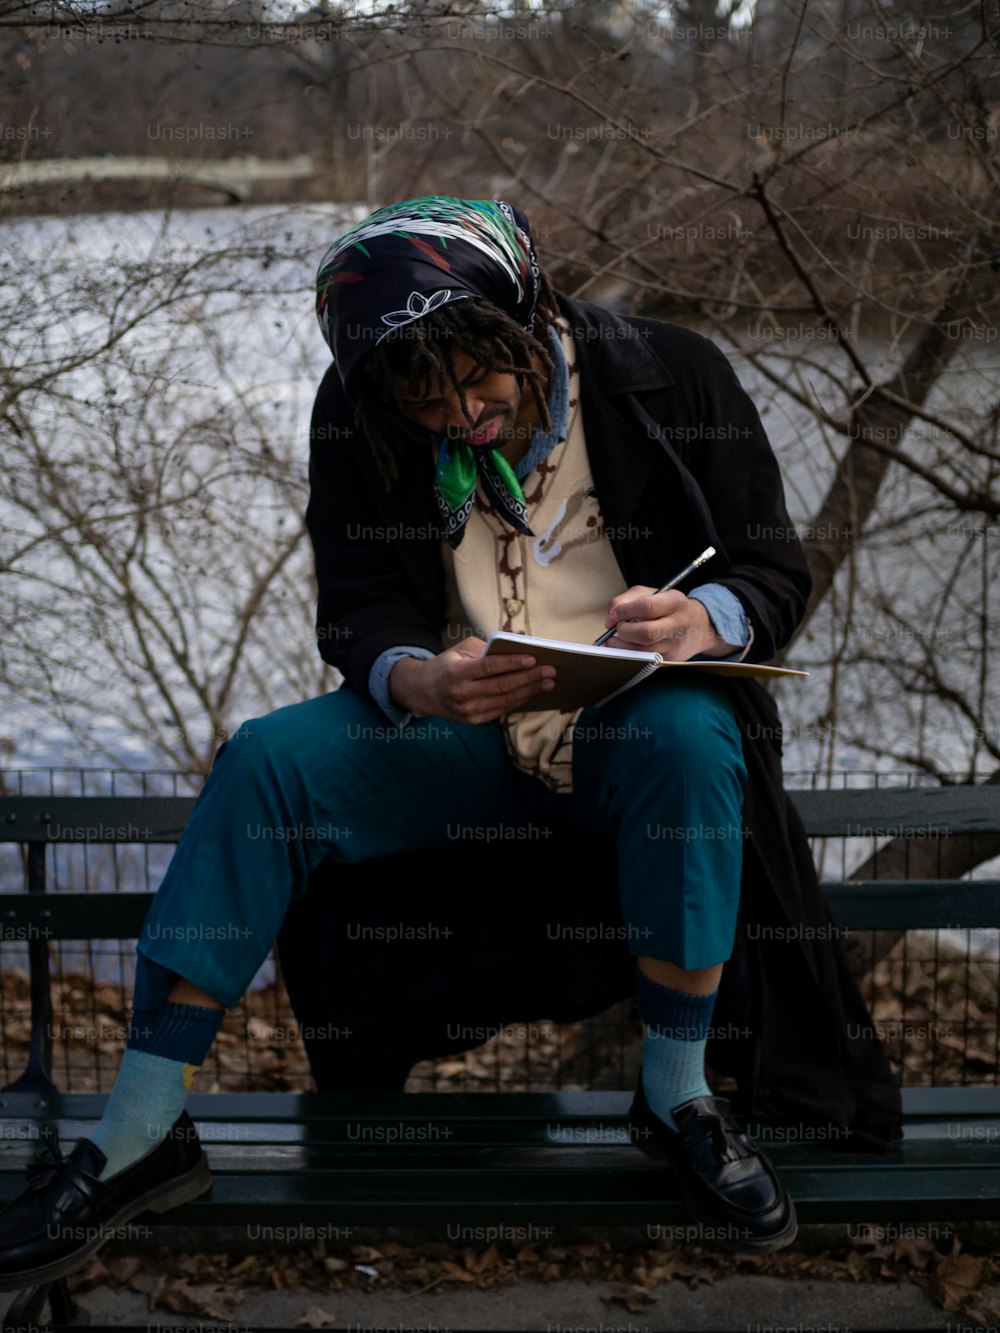 Una persona sentada en un banco escribiendo en un cuaderno